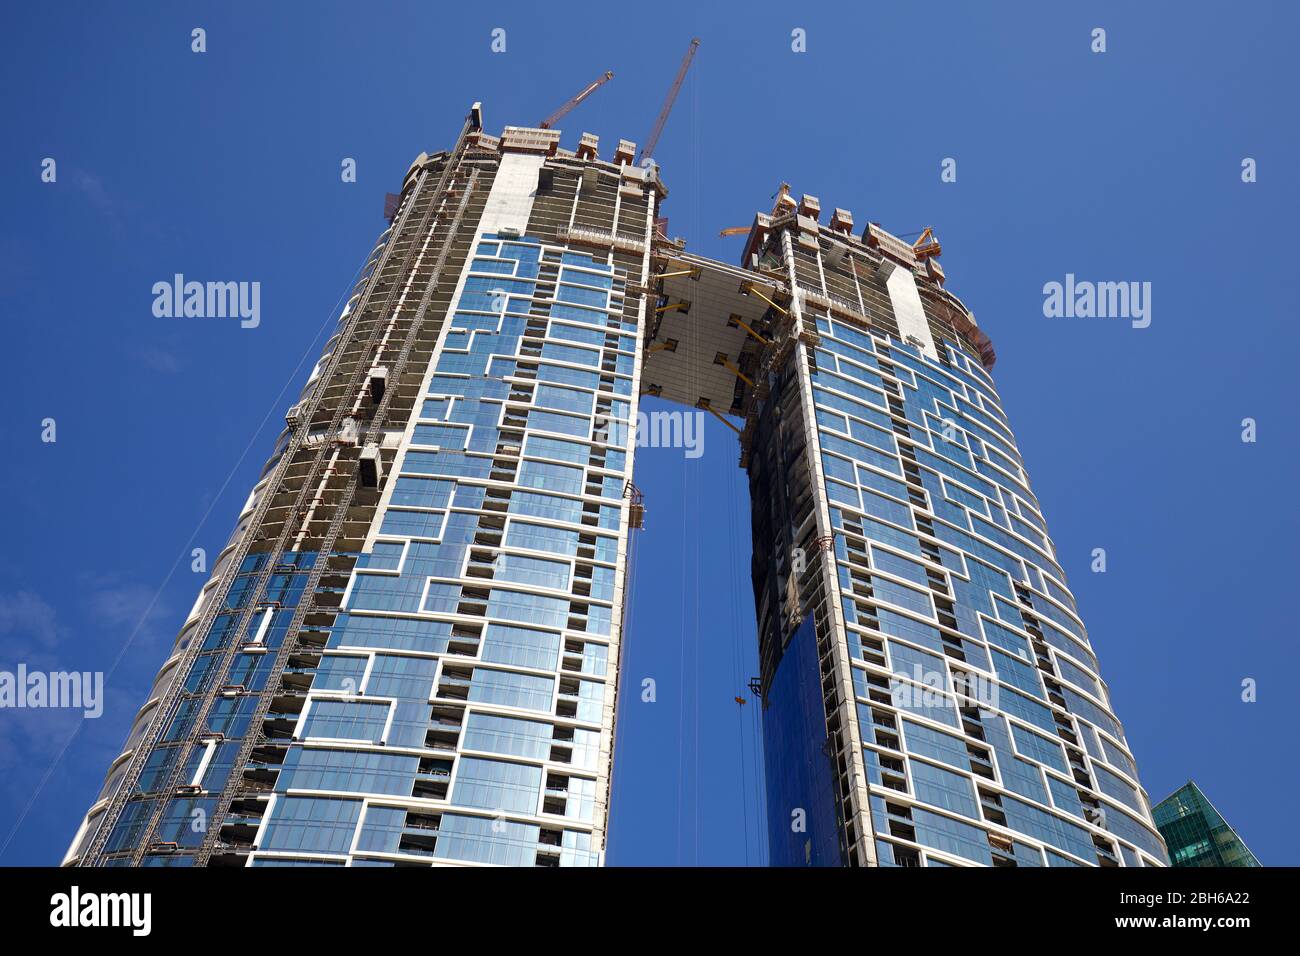 DUBAI, EMIRATI ARABI UNITI - 23 NOVEMBRE 2019: Grattacieli in costruzione con gru, vista a basso angolo in una giornata di sole, cielo azzurro a Dubai Foto Stock